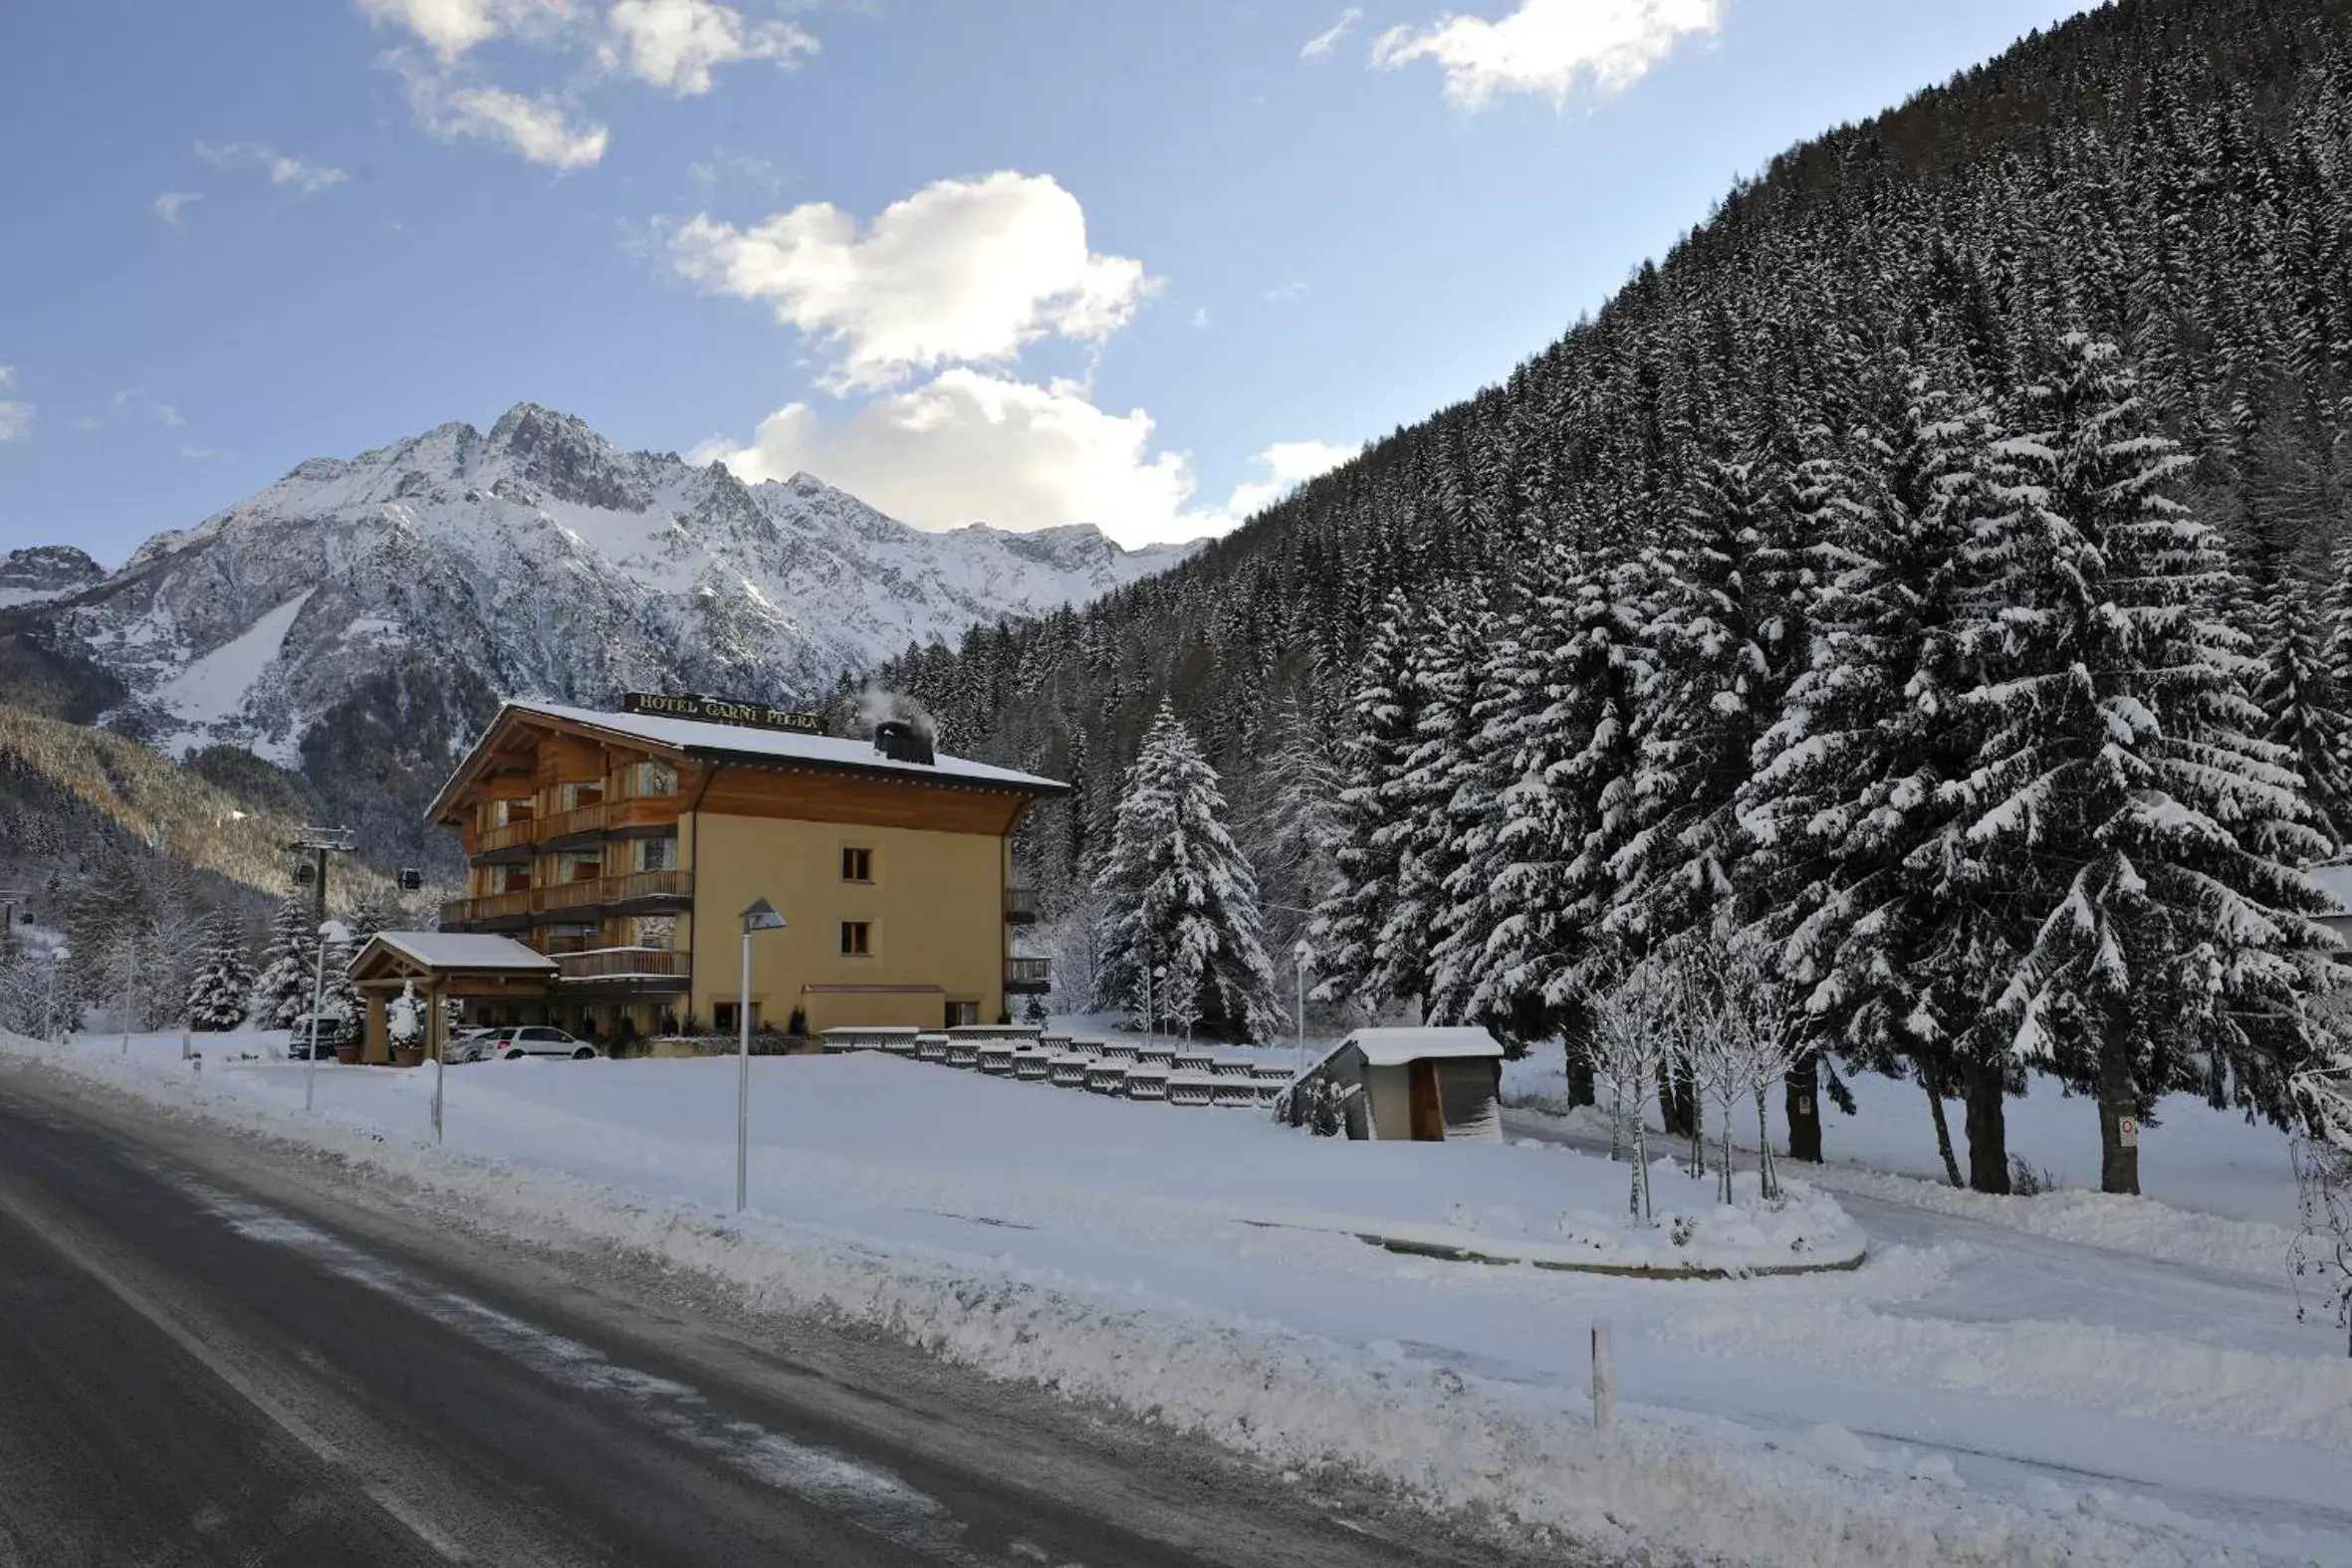 On site, Winter in Hotel Garni Pegrà